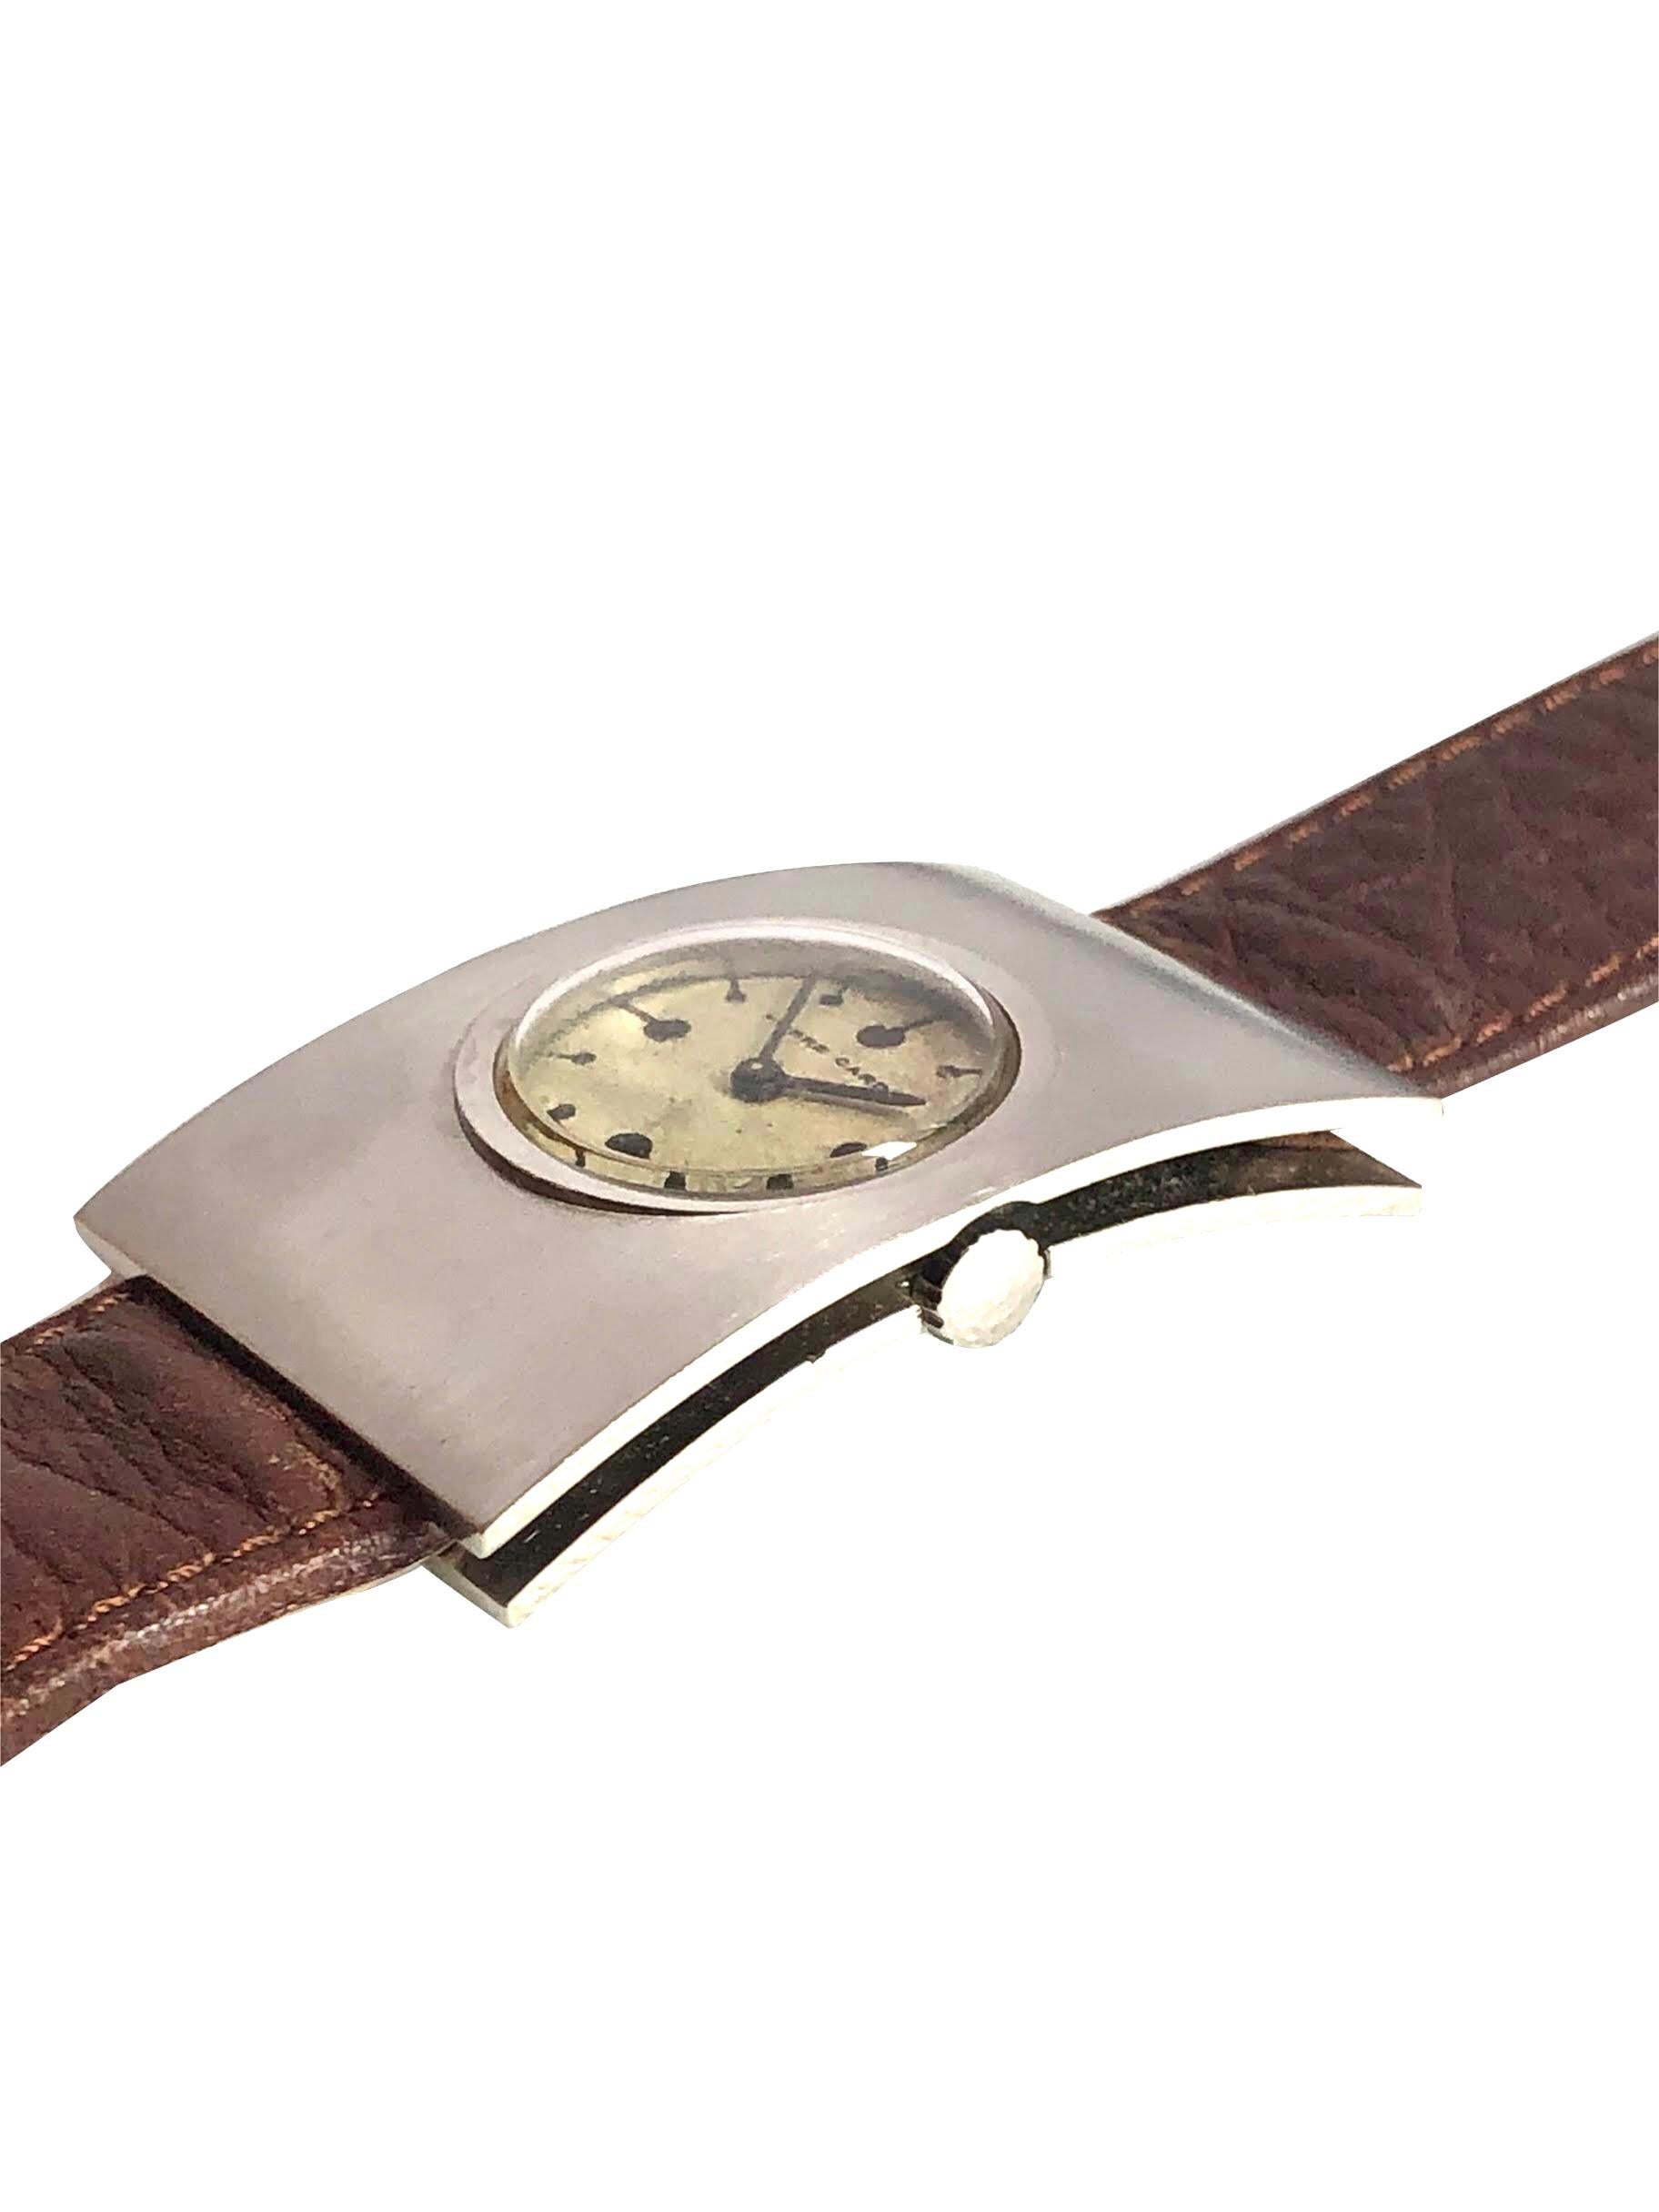 Circa 1970 Montre-bracelet du milieu du siècle pour Pierre Cardin, 47 X 30 M.M. Boîtier 3 pièces en acier inoxydable. Mouvement mécanique Jaeger-LeCoultre 17 Jewell, à remontage manuel, cadran argenté satiné d'origine. Bracelet en cuir marron récent